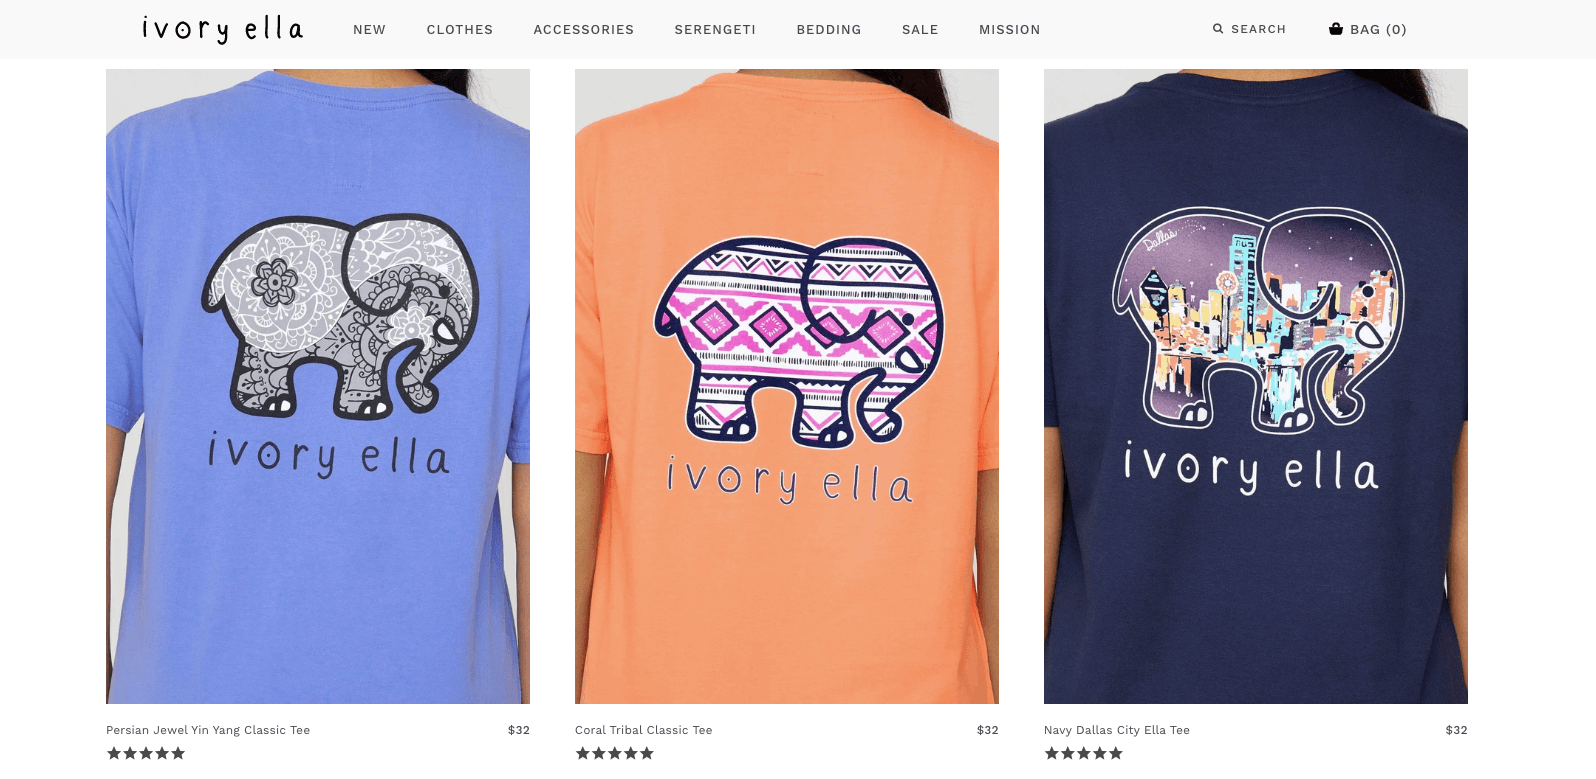 Brand Storytelling - ivory ella shirts